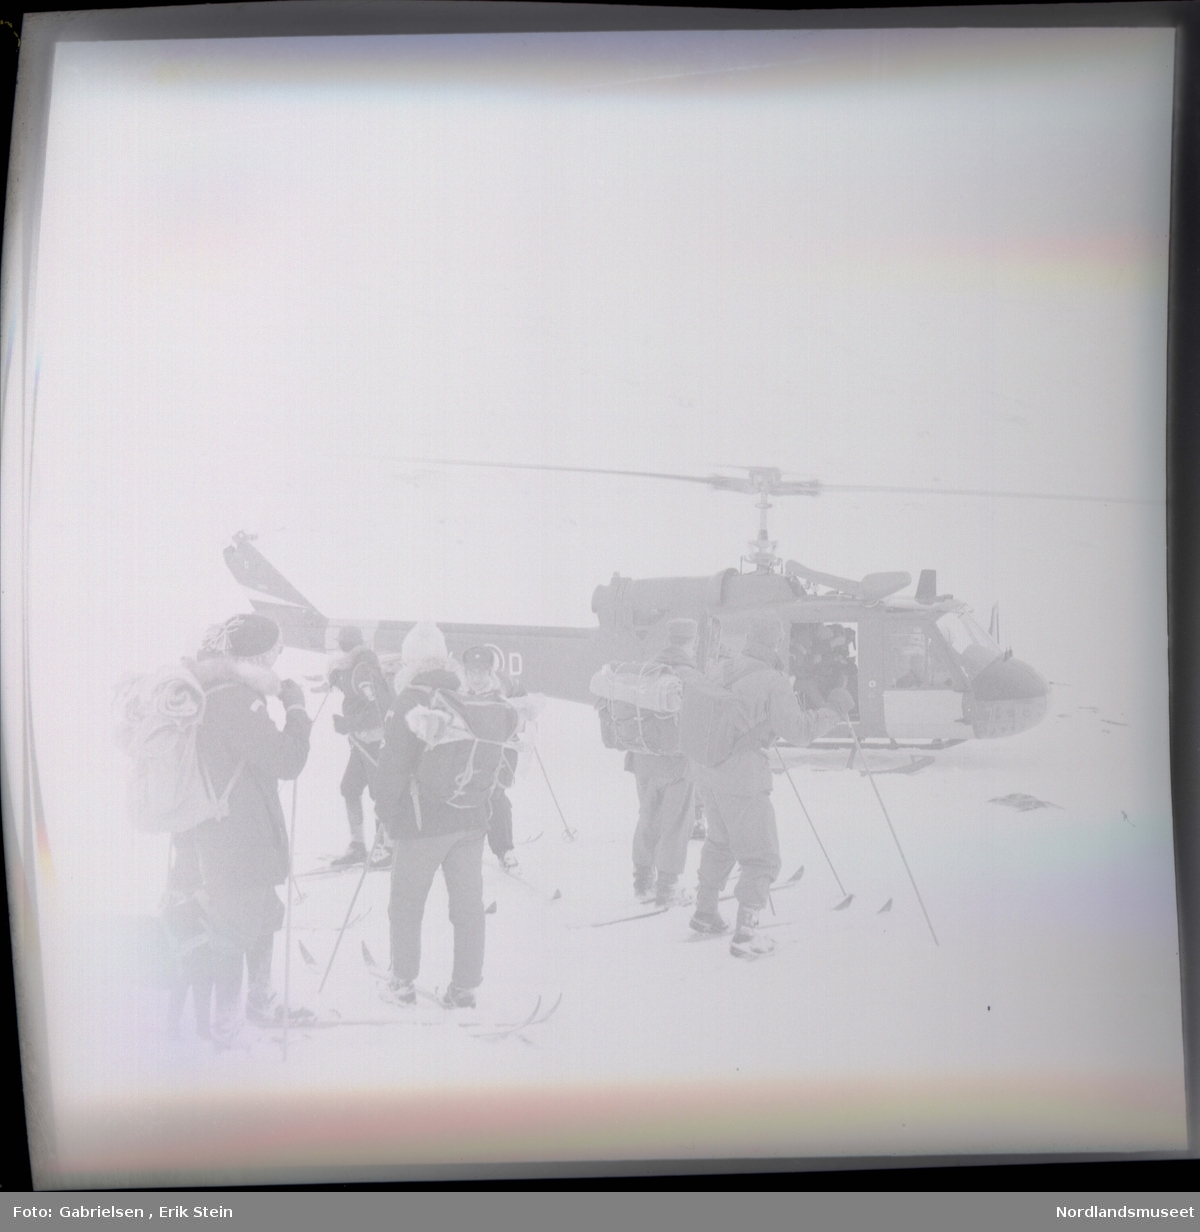 Fotografi av mange menn og kvinner kledd i vinterklær
med sekker på ryggene som står på en snøslette med ski på seg i næreheten av et helikopter som man
ser en mann inni i døråpningen til helikopteret 
som man ser står på snøsletten ved et berg